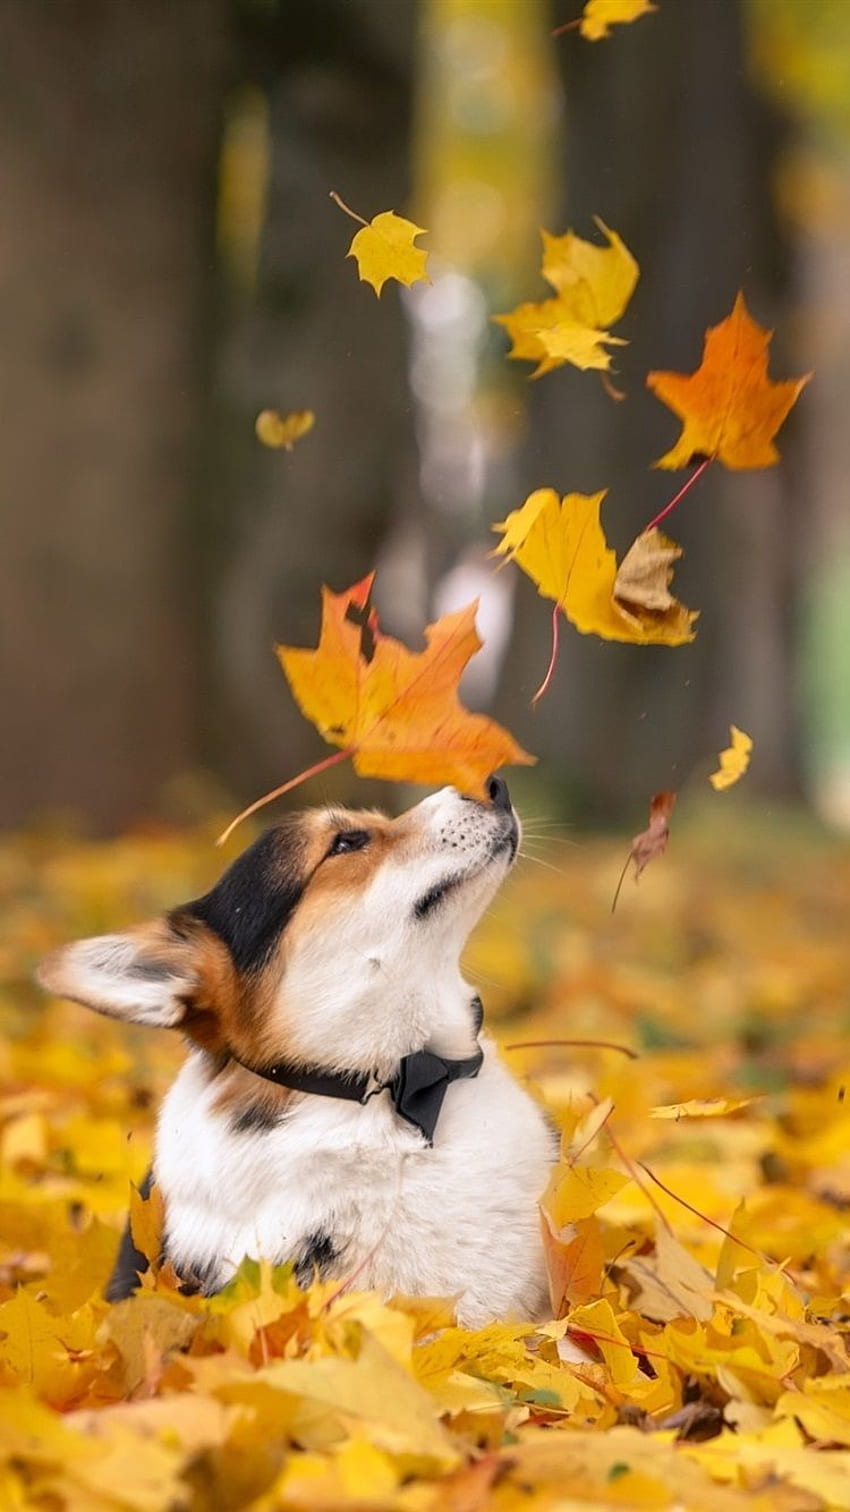 Chó corgi mùa thu trên chiếc iPhone 8 của bạn sẽ làm cho bạn cảm thấy thật gần gũi với thiên nhiên. Bức ảnh đẹp và đáng yêu này sẽ đưa bạn vào thế giới của những chiếc lá xanh buồn trong mùa thu, cùng với cảm giác ấm áp của chú chó corgi đáng yêu.